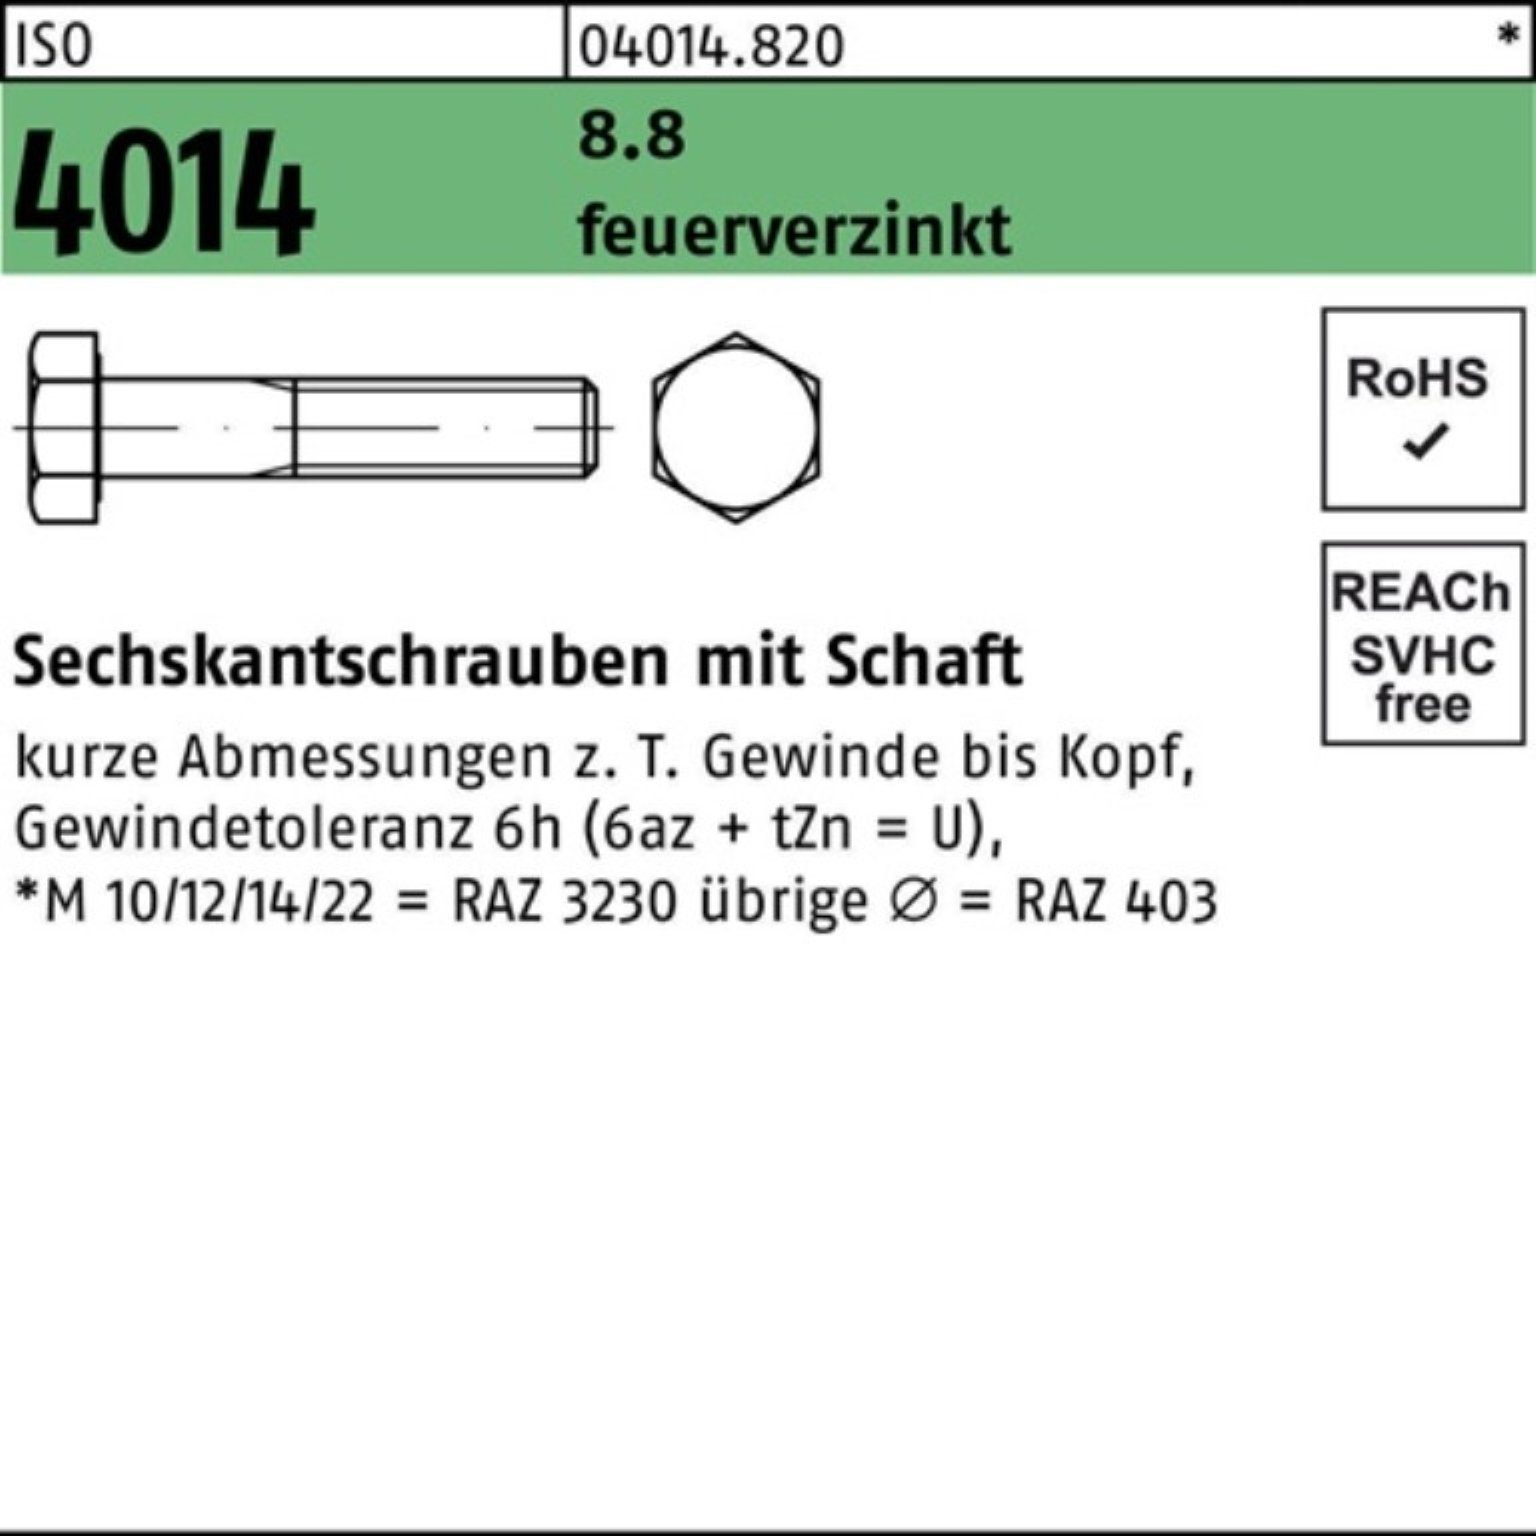 Bufab Sechskantschraube 100er Pack Sechskantschraube ISO 4014 Schaft M12x 45 8.8 feuerverz. 10